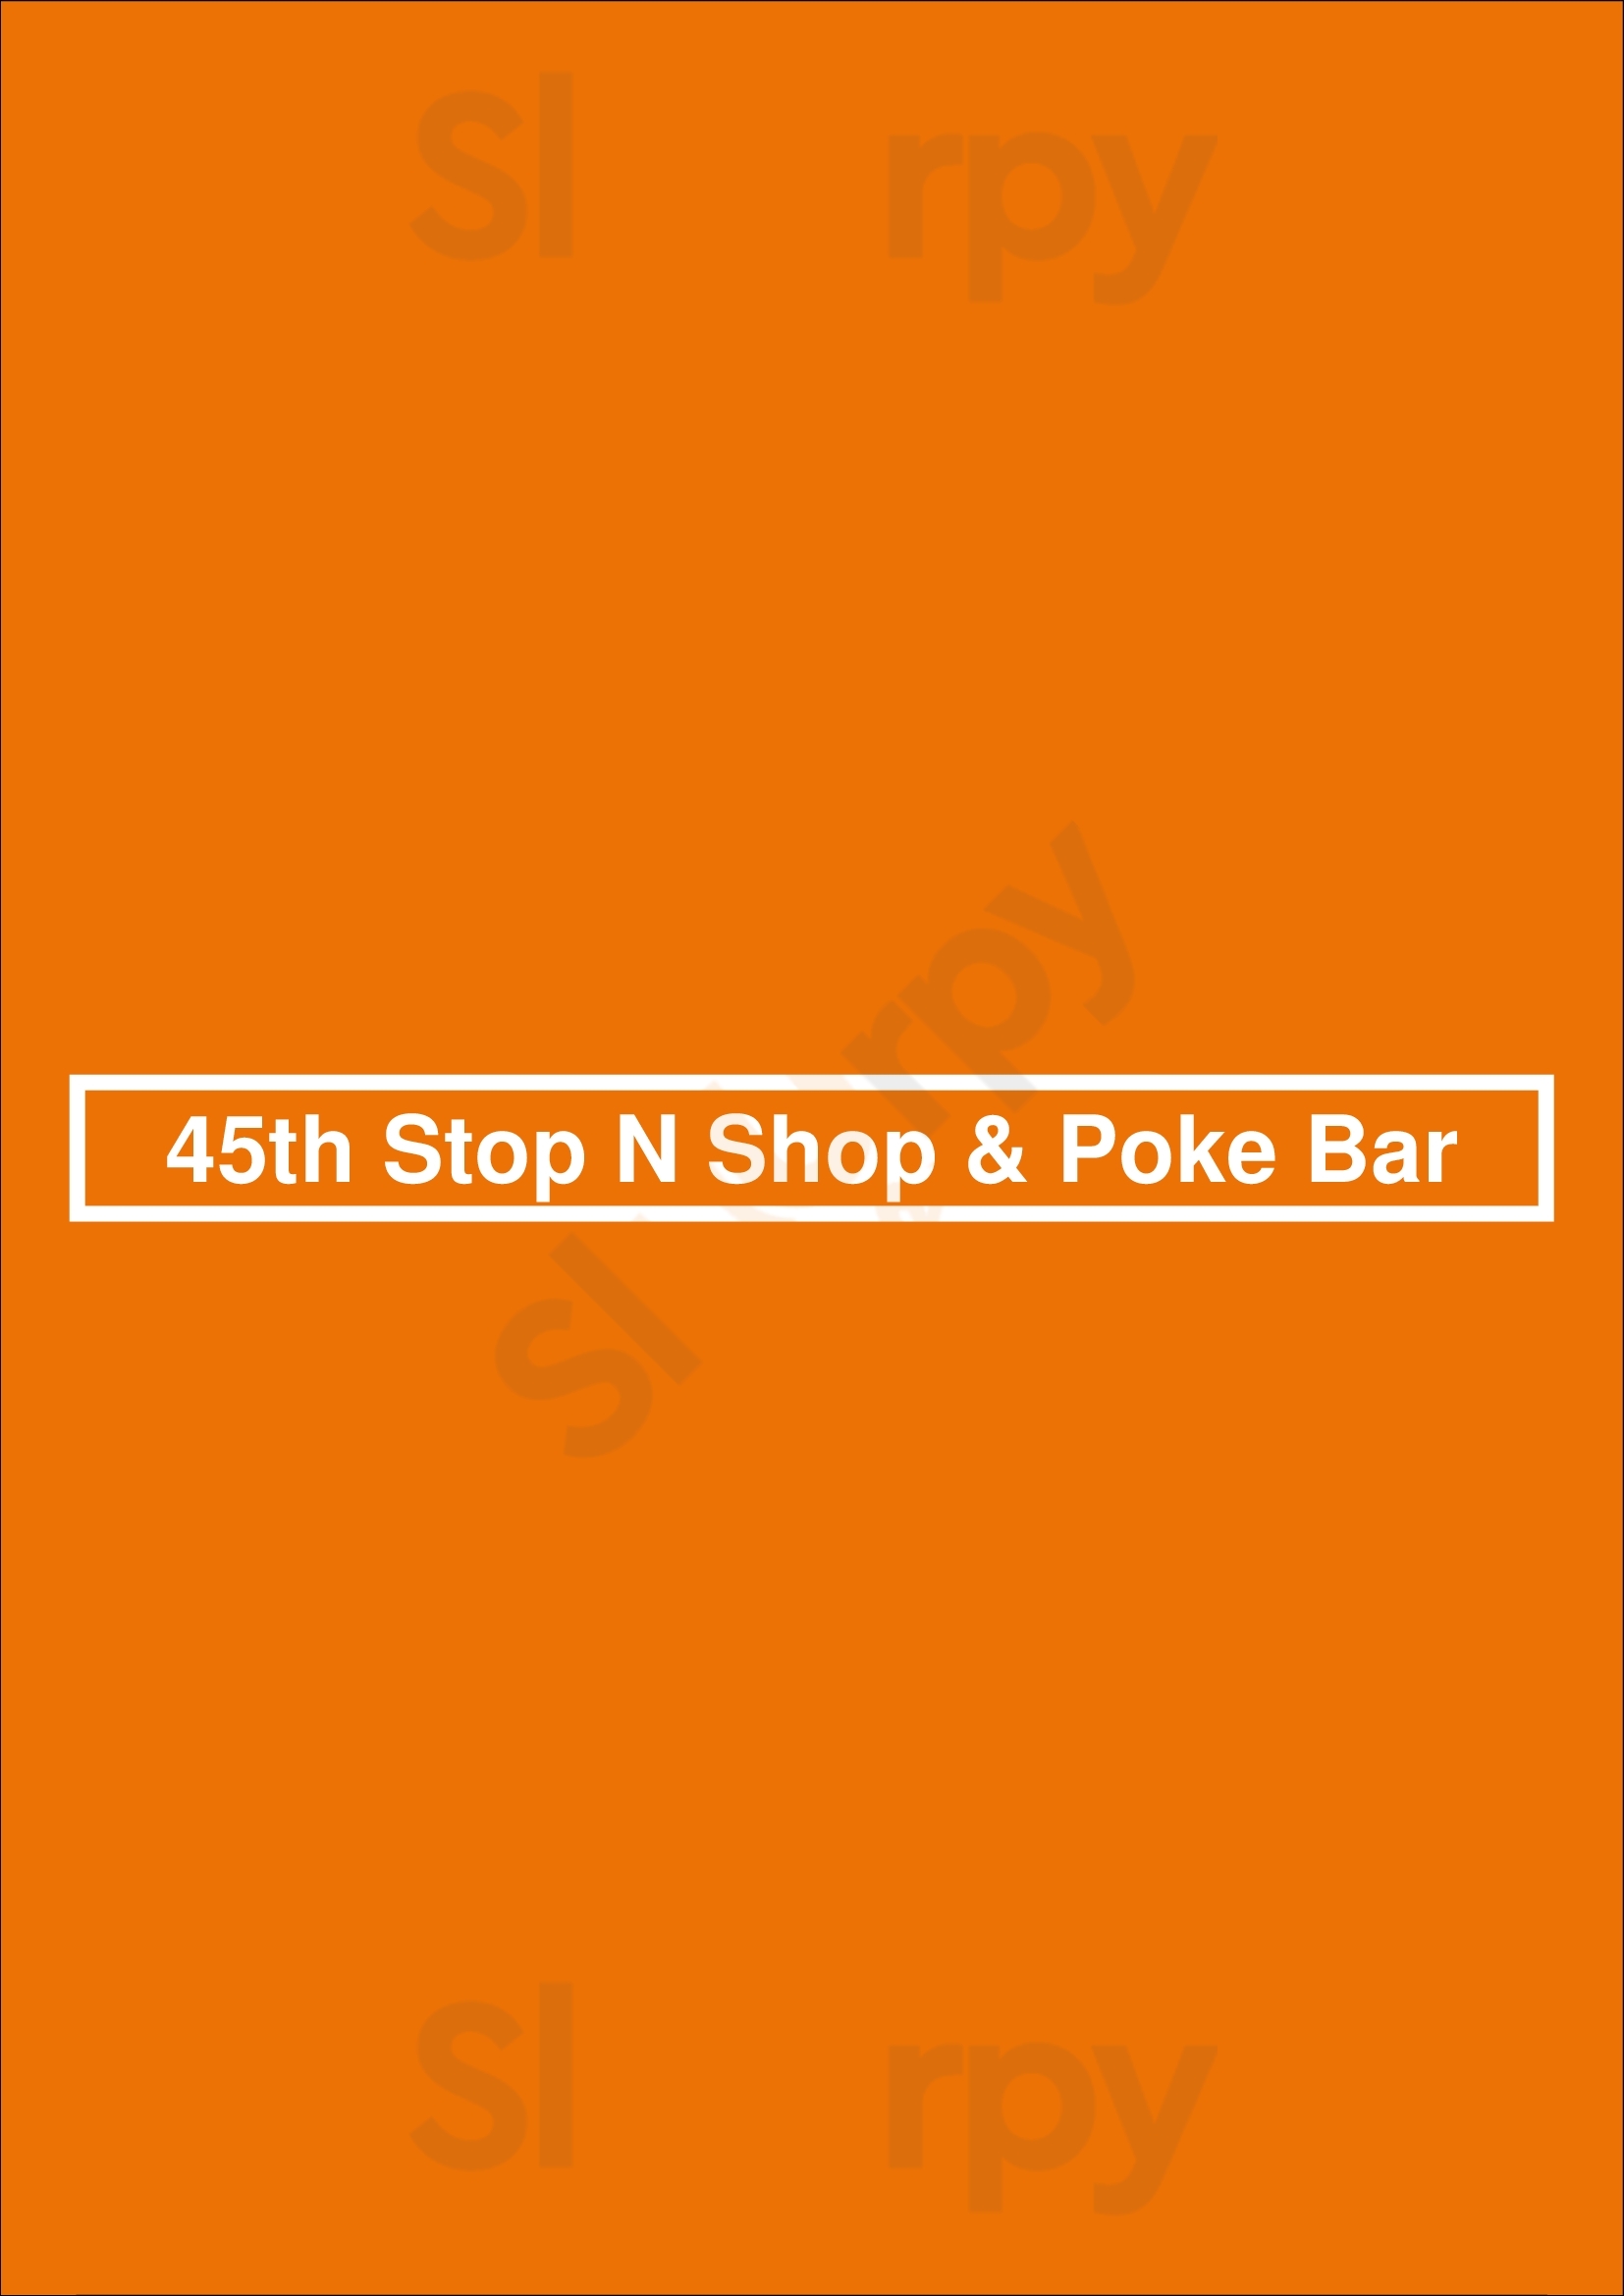 45th Stop N Shop & Poke Bar Seattle Menu - 1